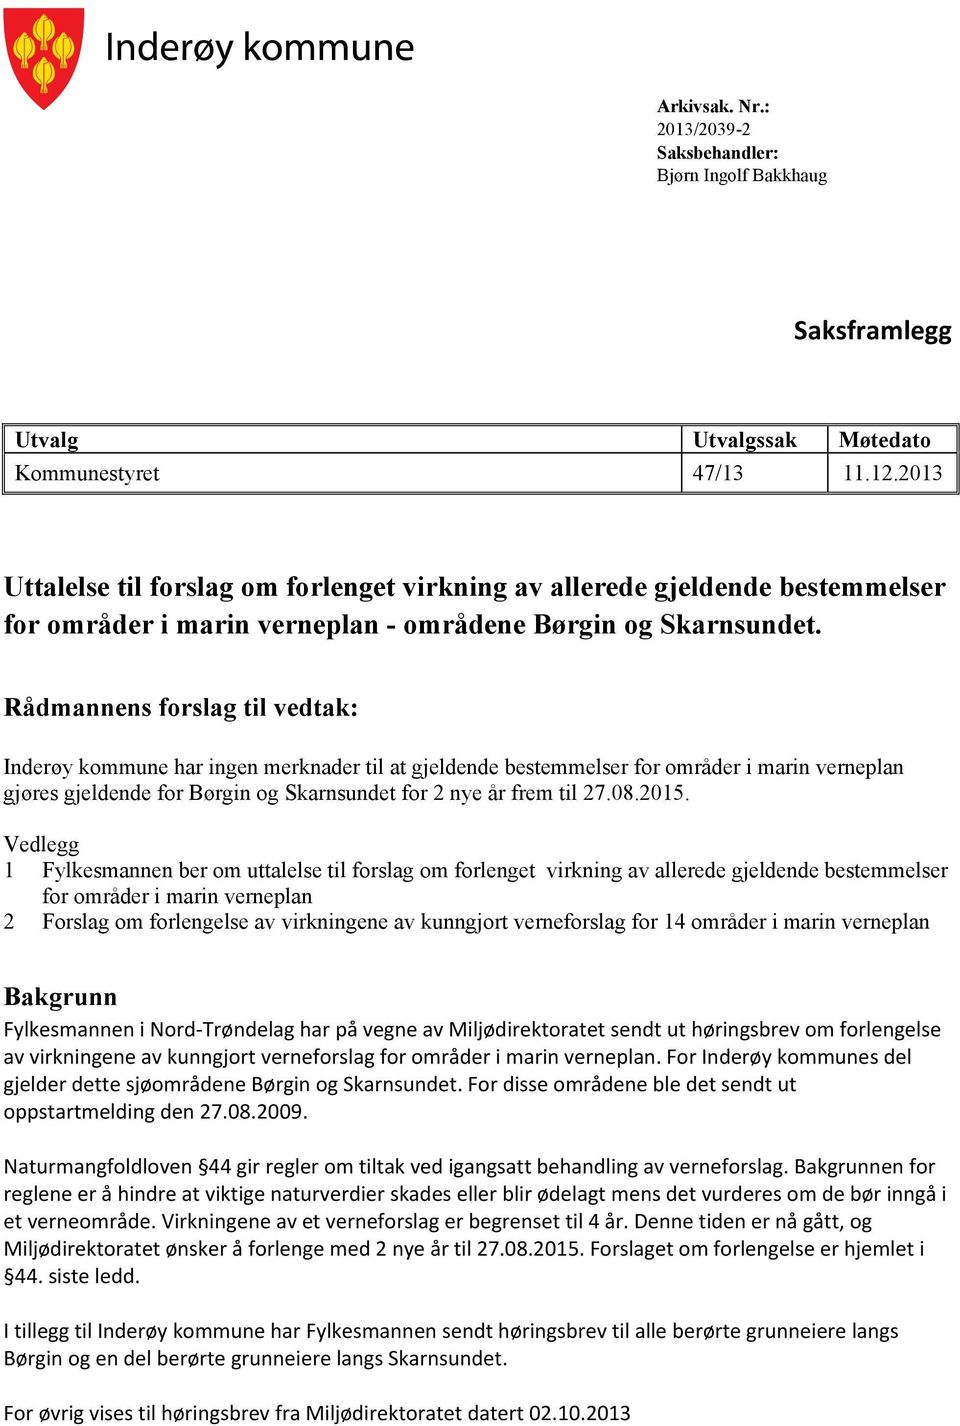 Rådmannens forslag til vedtak: Inderøy kommune har ingen merknader til at gjeldende bestemmelser for områder i marin verneplan gjøres gjeldende for Børgin og Skarnsundet for 2 nye år frem til 27.08.